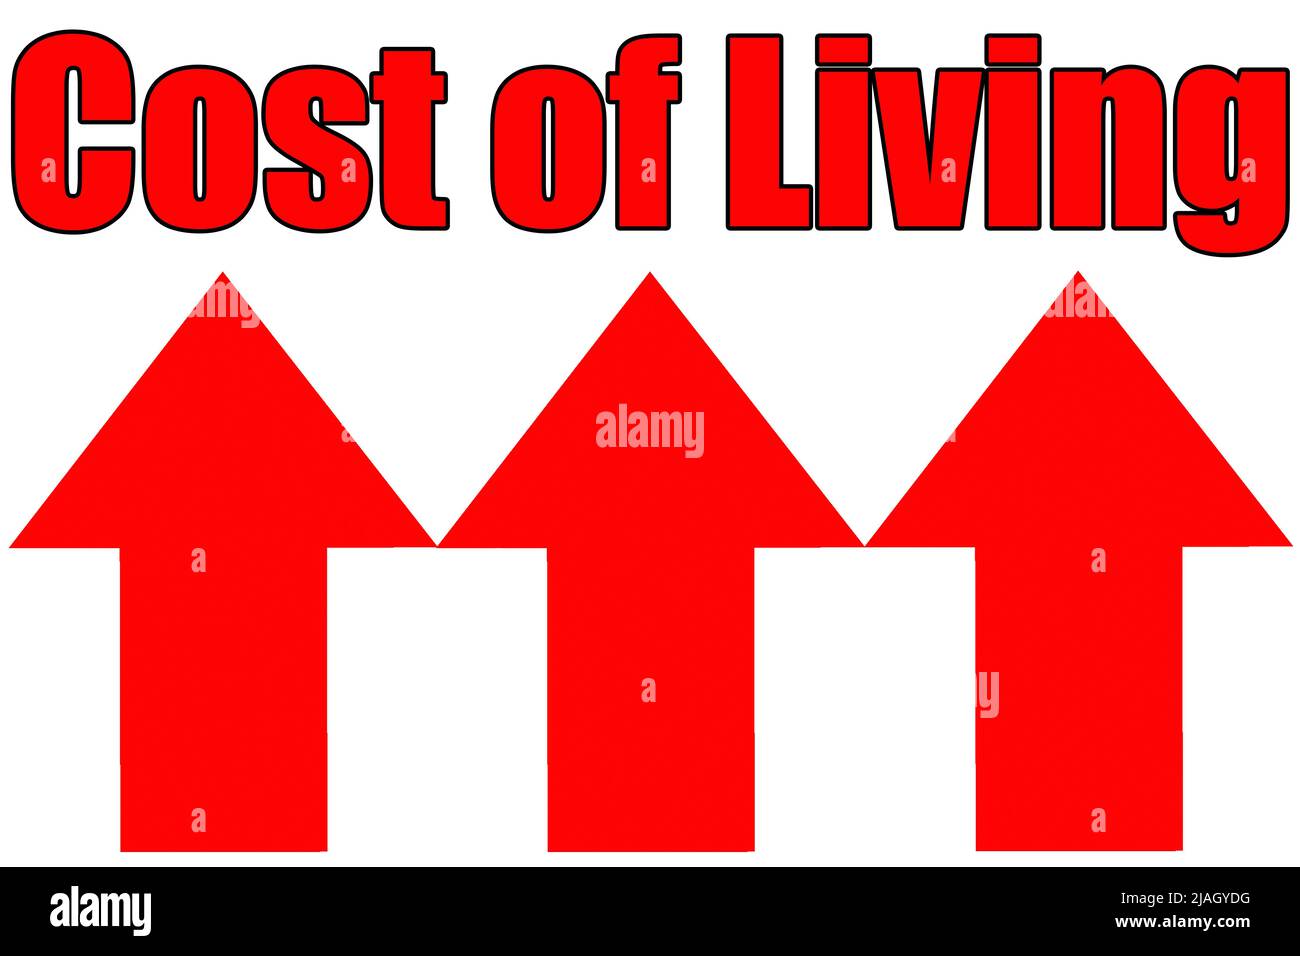 Illustrazione semplice riguardante la crisi di costo e vita nel 2022. Foto Stock